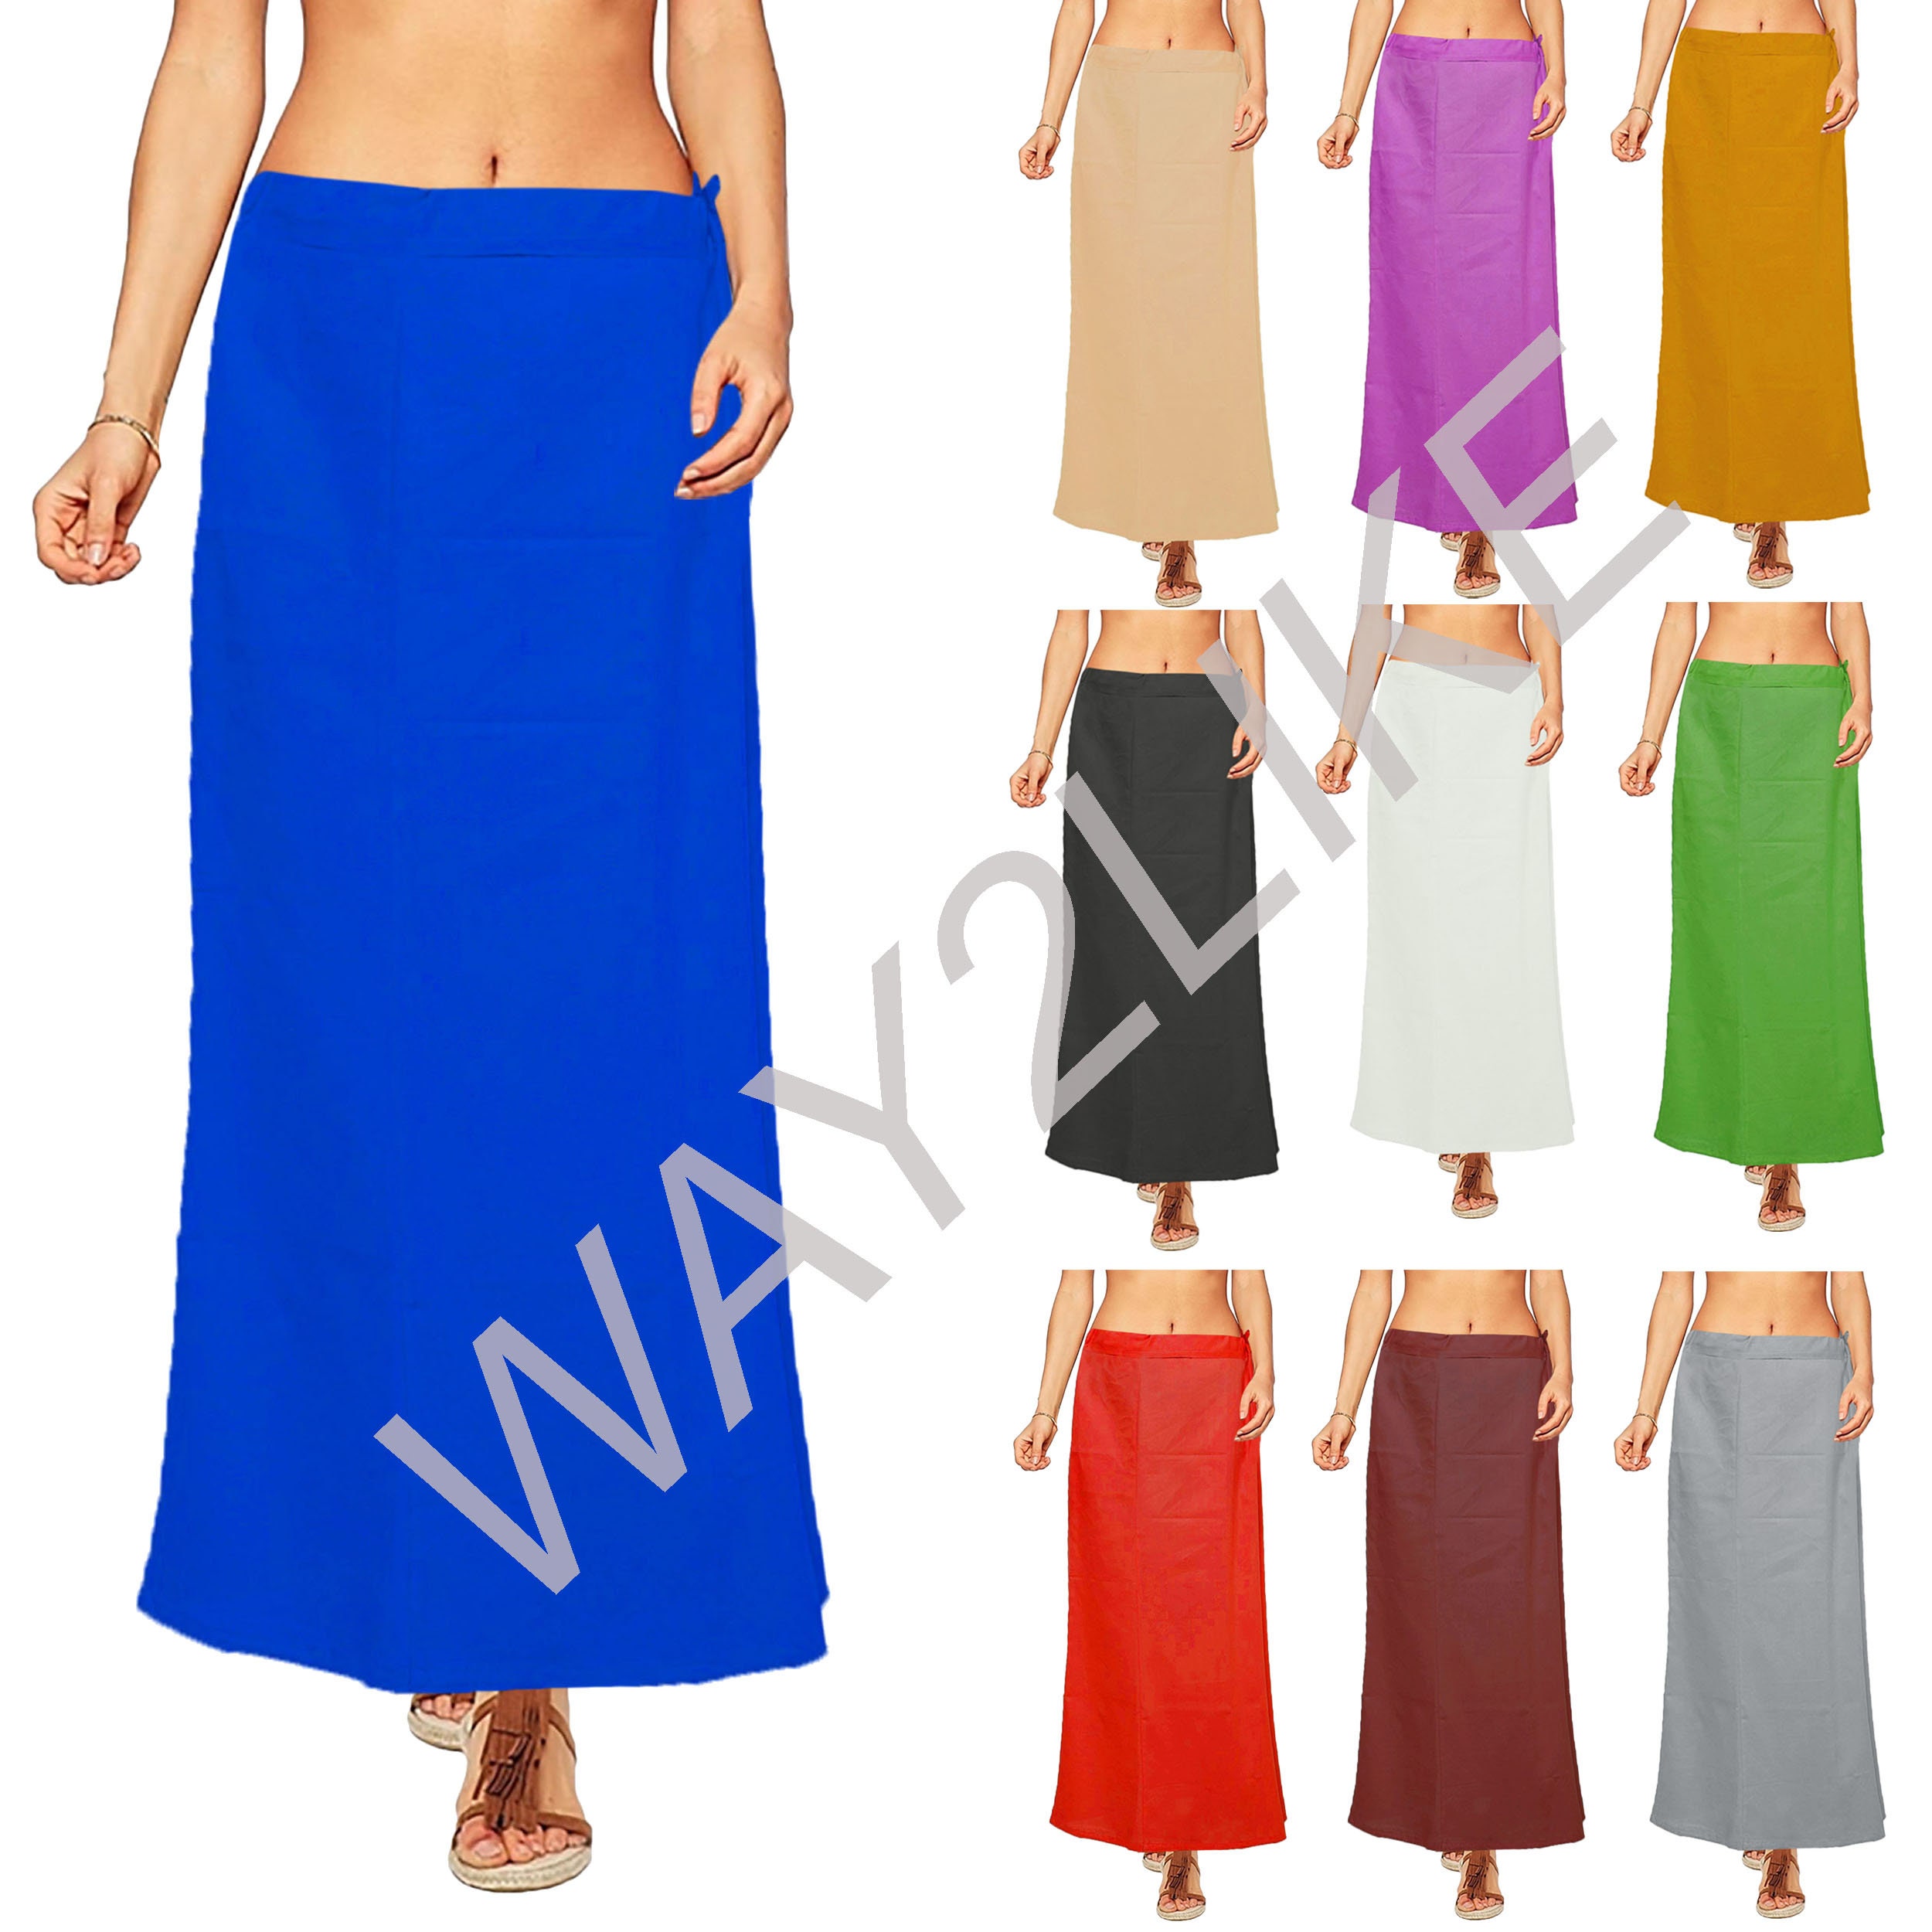 Women Underskirt Cotton Petticoat Inskirt Plain Solid Women Free Size for  Sari Inner Wear Skirts Dress Beach Pool Wrap Skirt for Gifts 